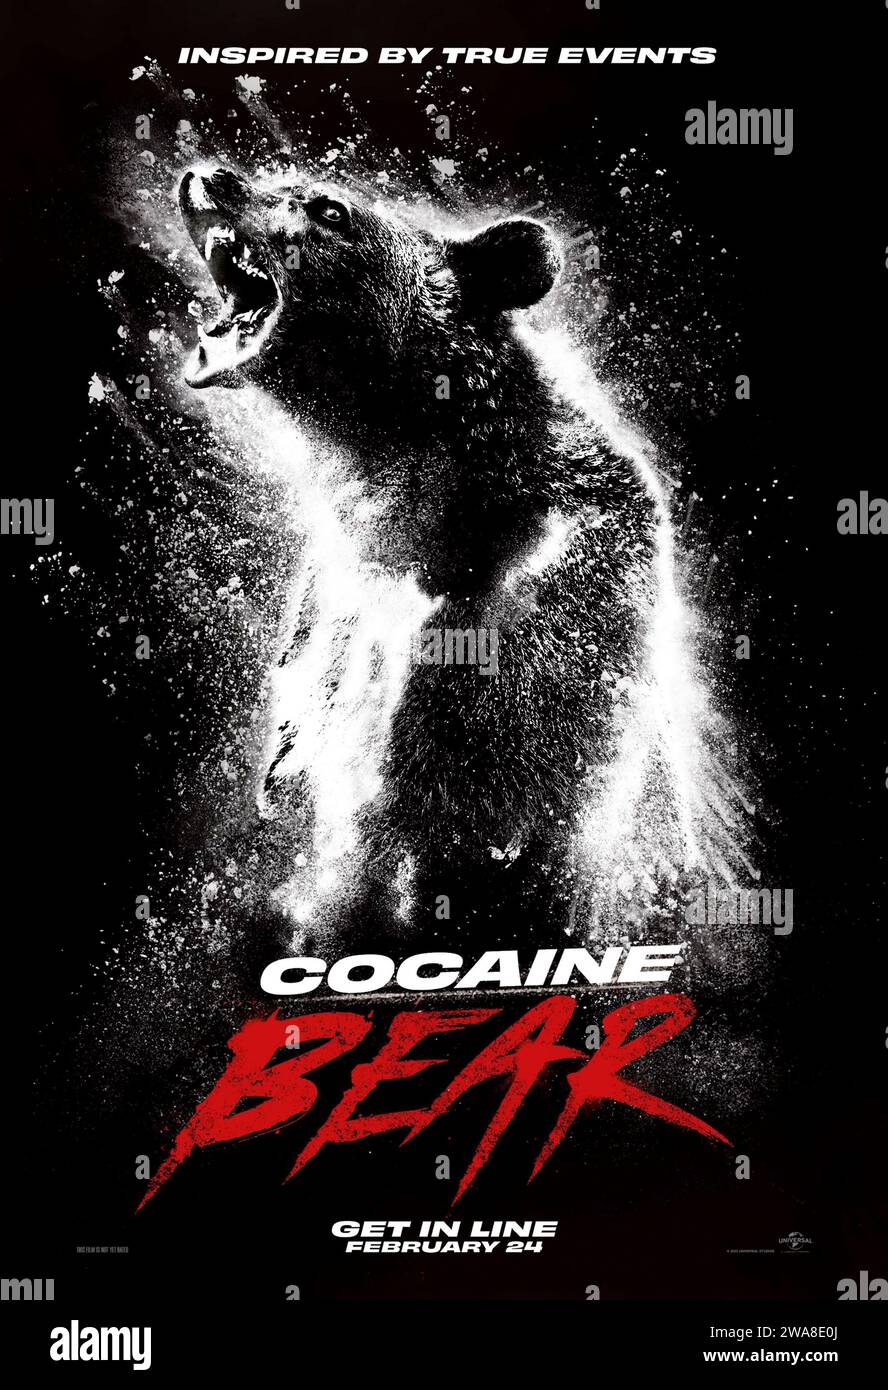 Cocaine Bear (2023) von Elizabeth Banks mit Keri Russell, Alden Ehrenreich und O’Shea Jackson Jr. in den Hauptrollen. Eine seltsame Gruppe von Polizisten, Kriminellen, Touristen und Teenagern versammelt sich in einem Wald von Georgia, wo ein riesiger Schwarzbär einen mörderischen Amoklauf begeht, nachdem er versehentlich Kokain eingenommen hat. Stockfoto